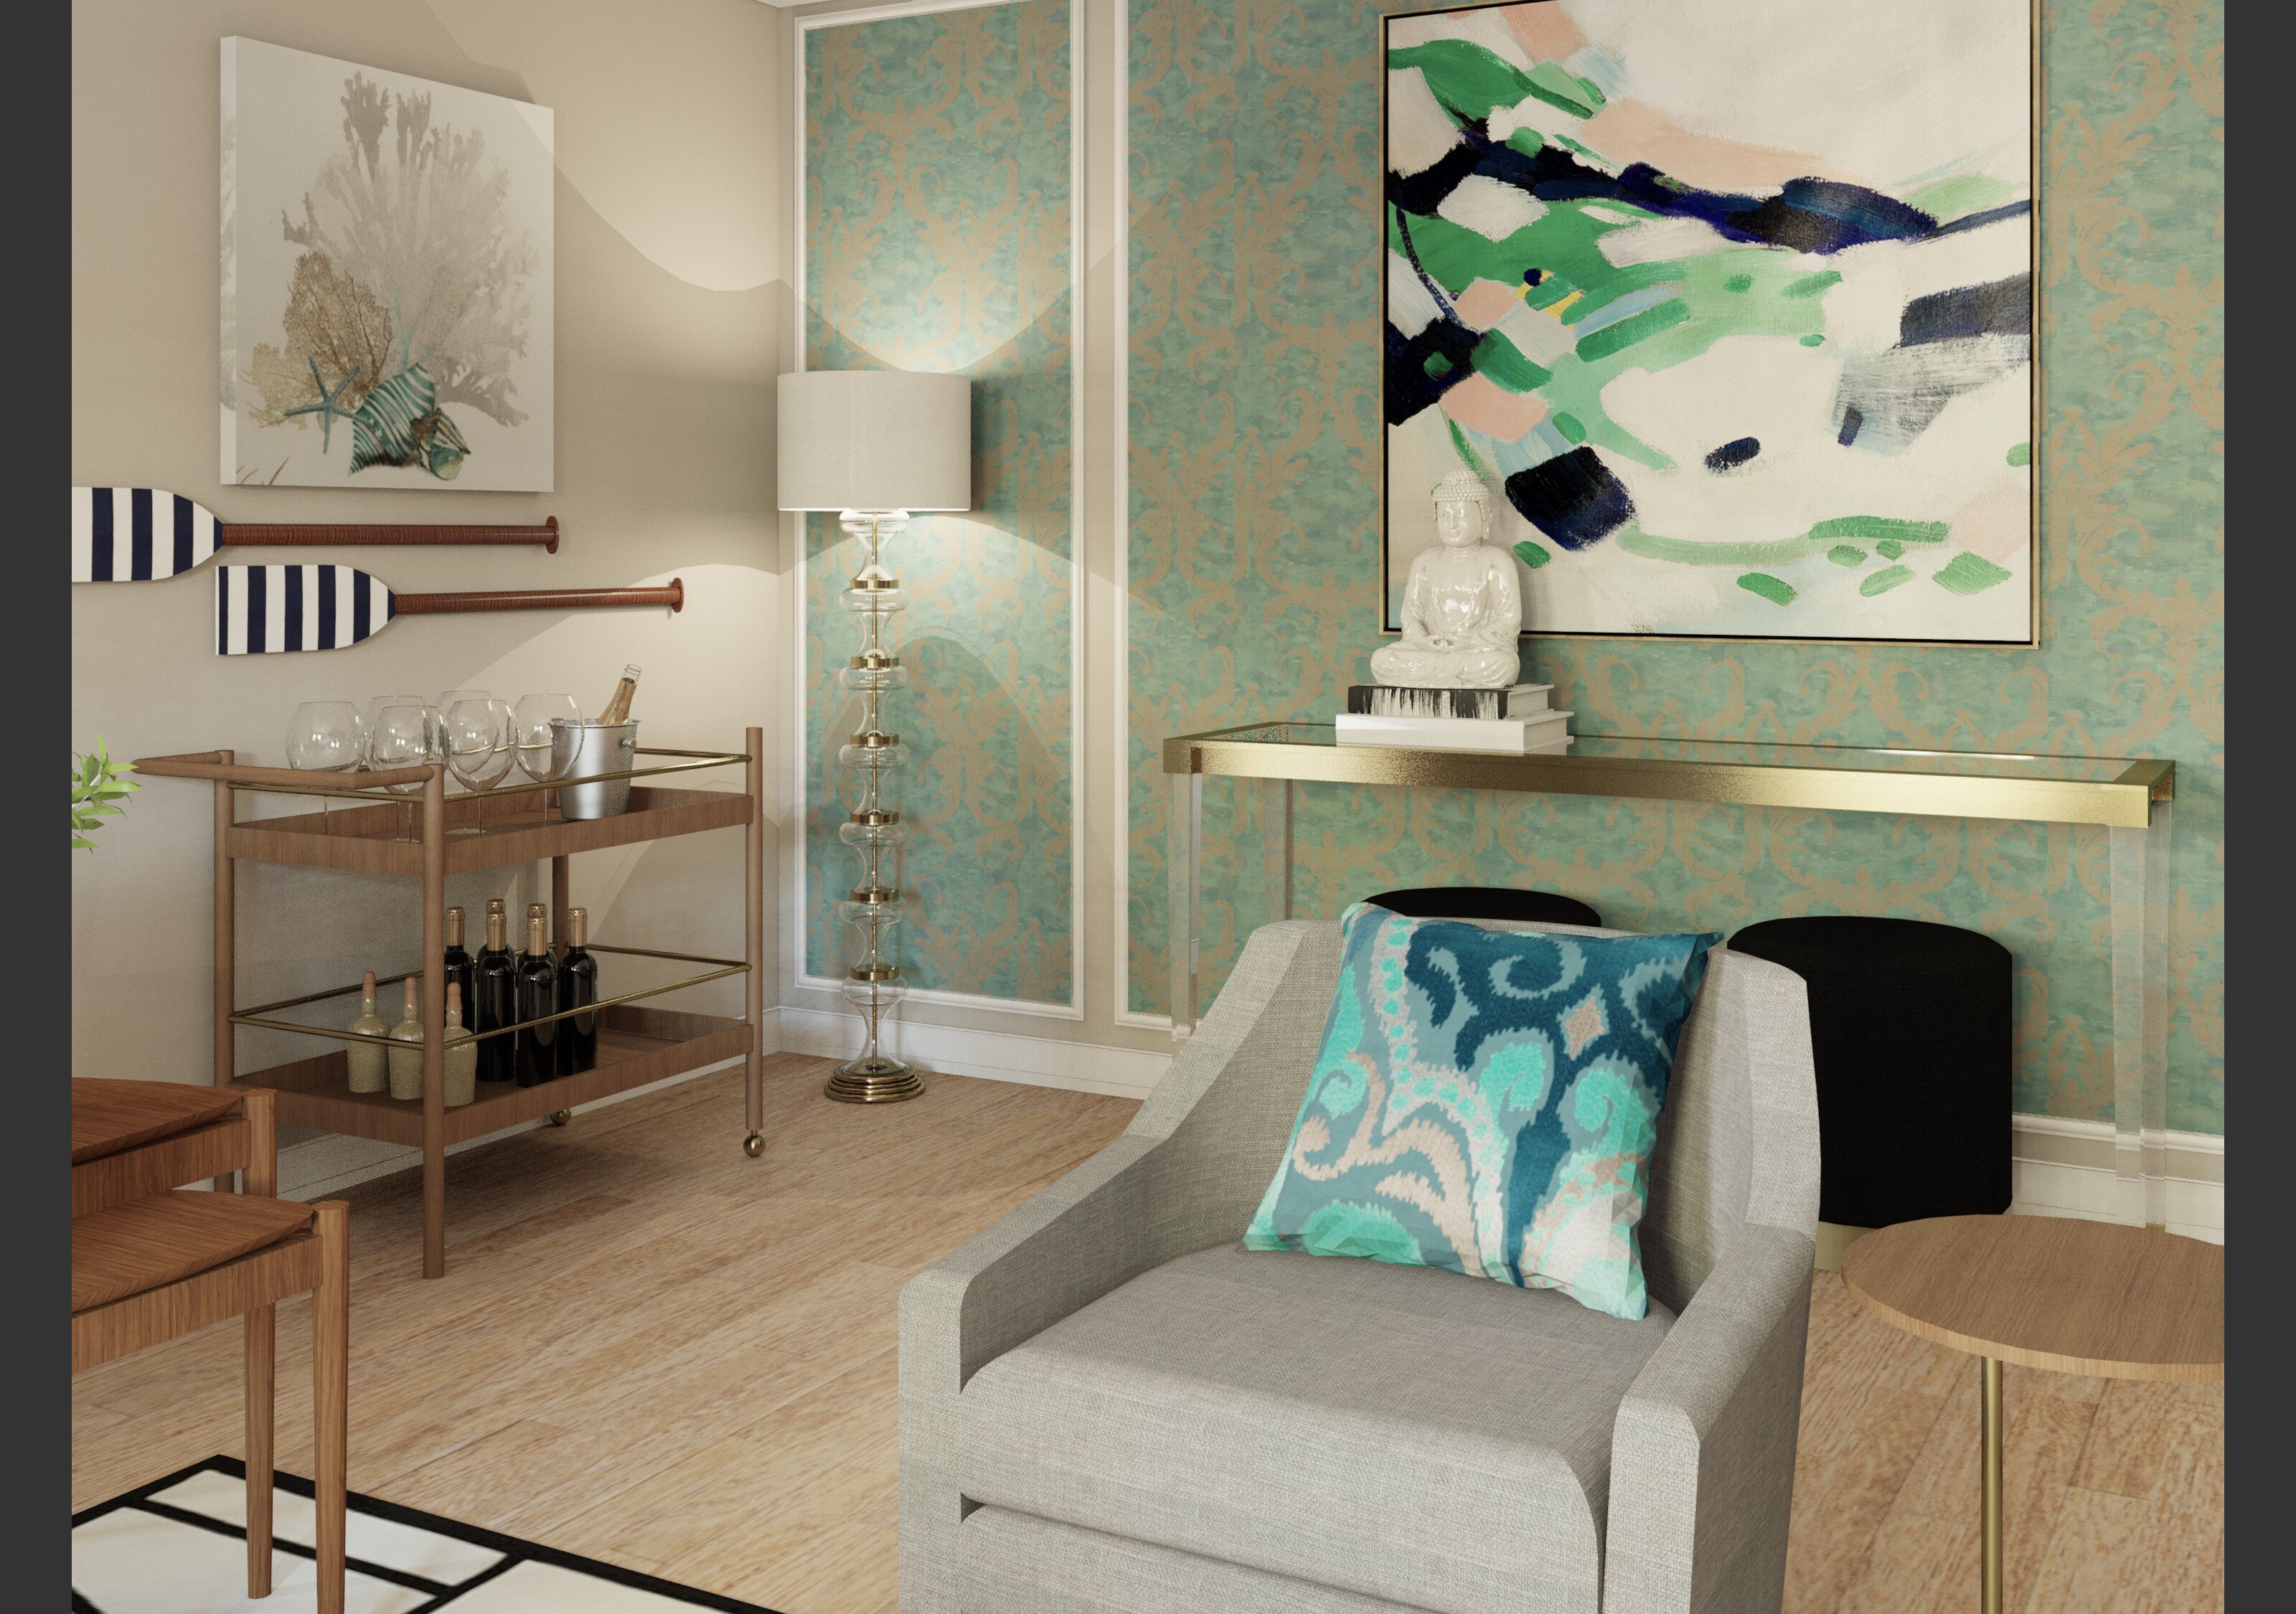 Online Living Dining Room Design interior design help